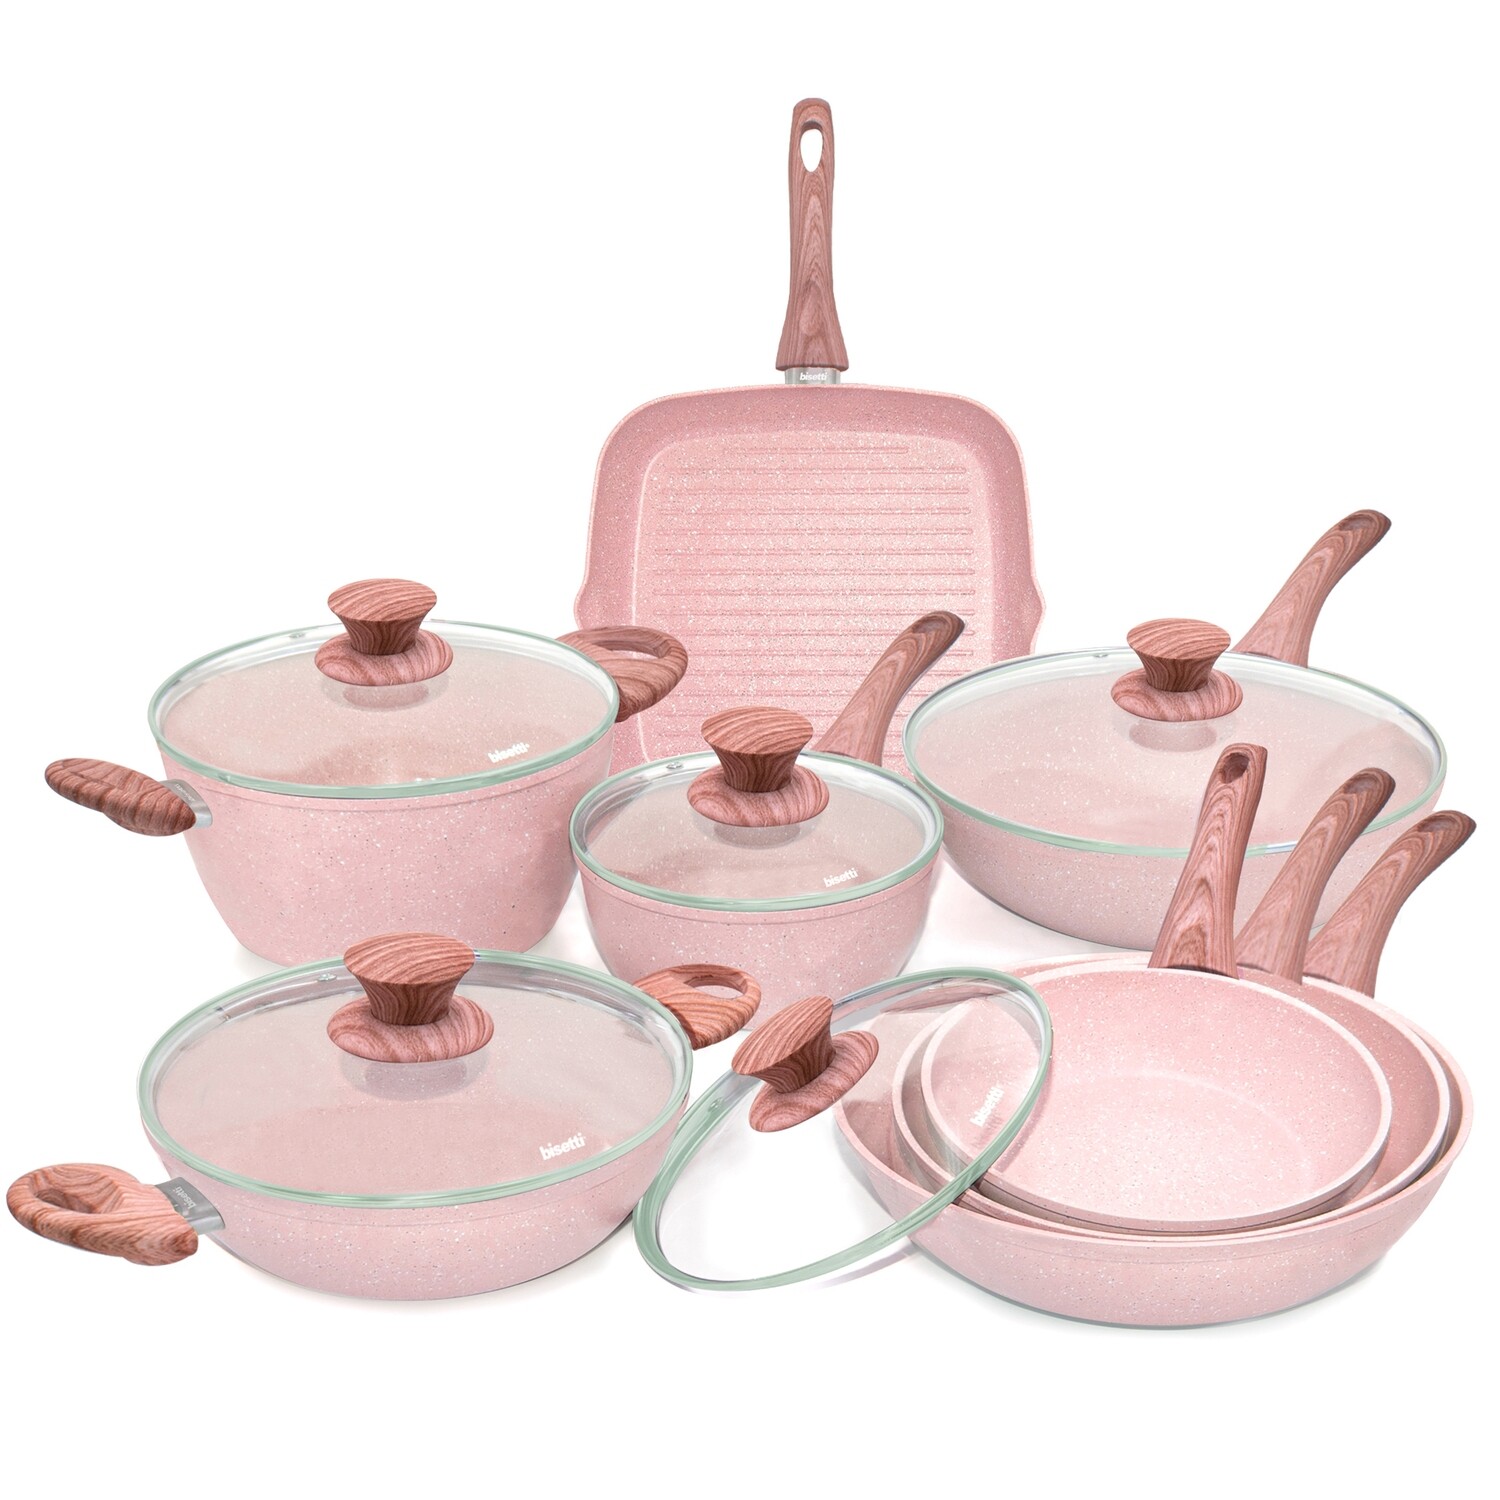 13 pieces cookware set 'Stonerose' pink wood colour handles